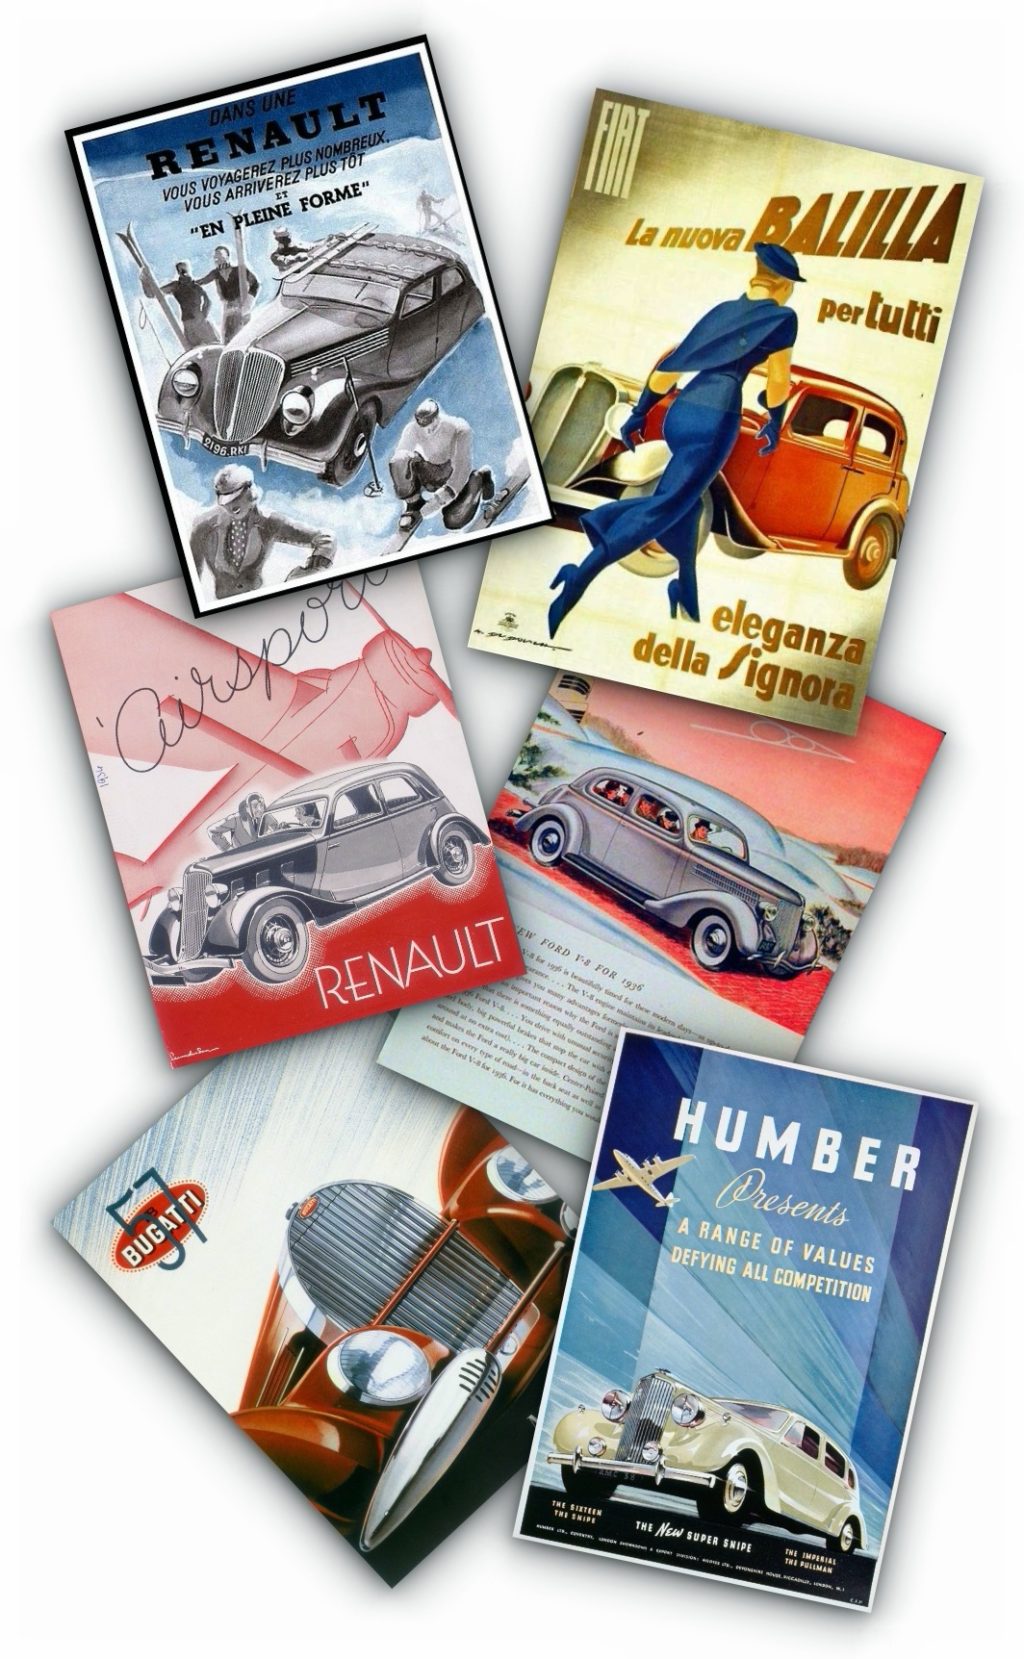 Publicidad del automóvil: Renault Balilla Humber